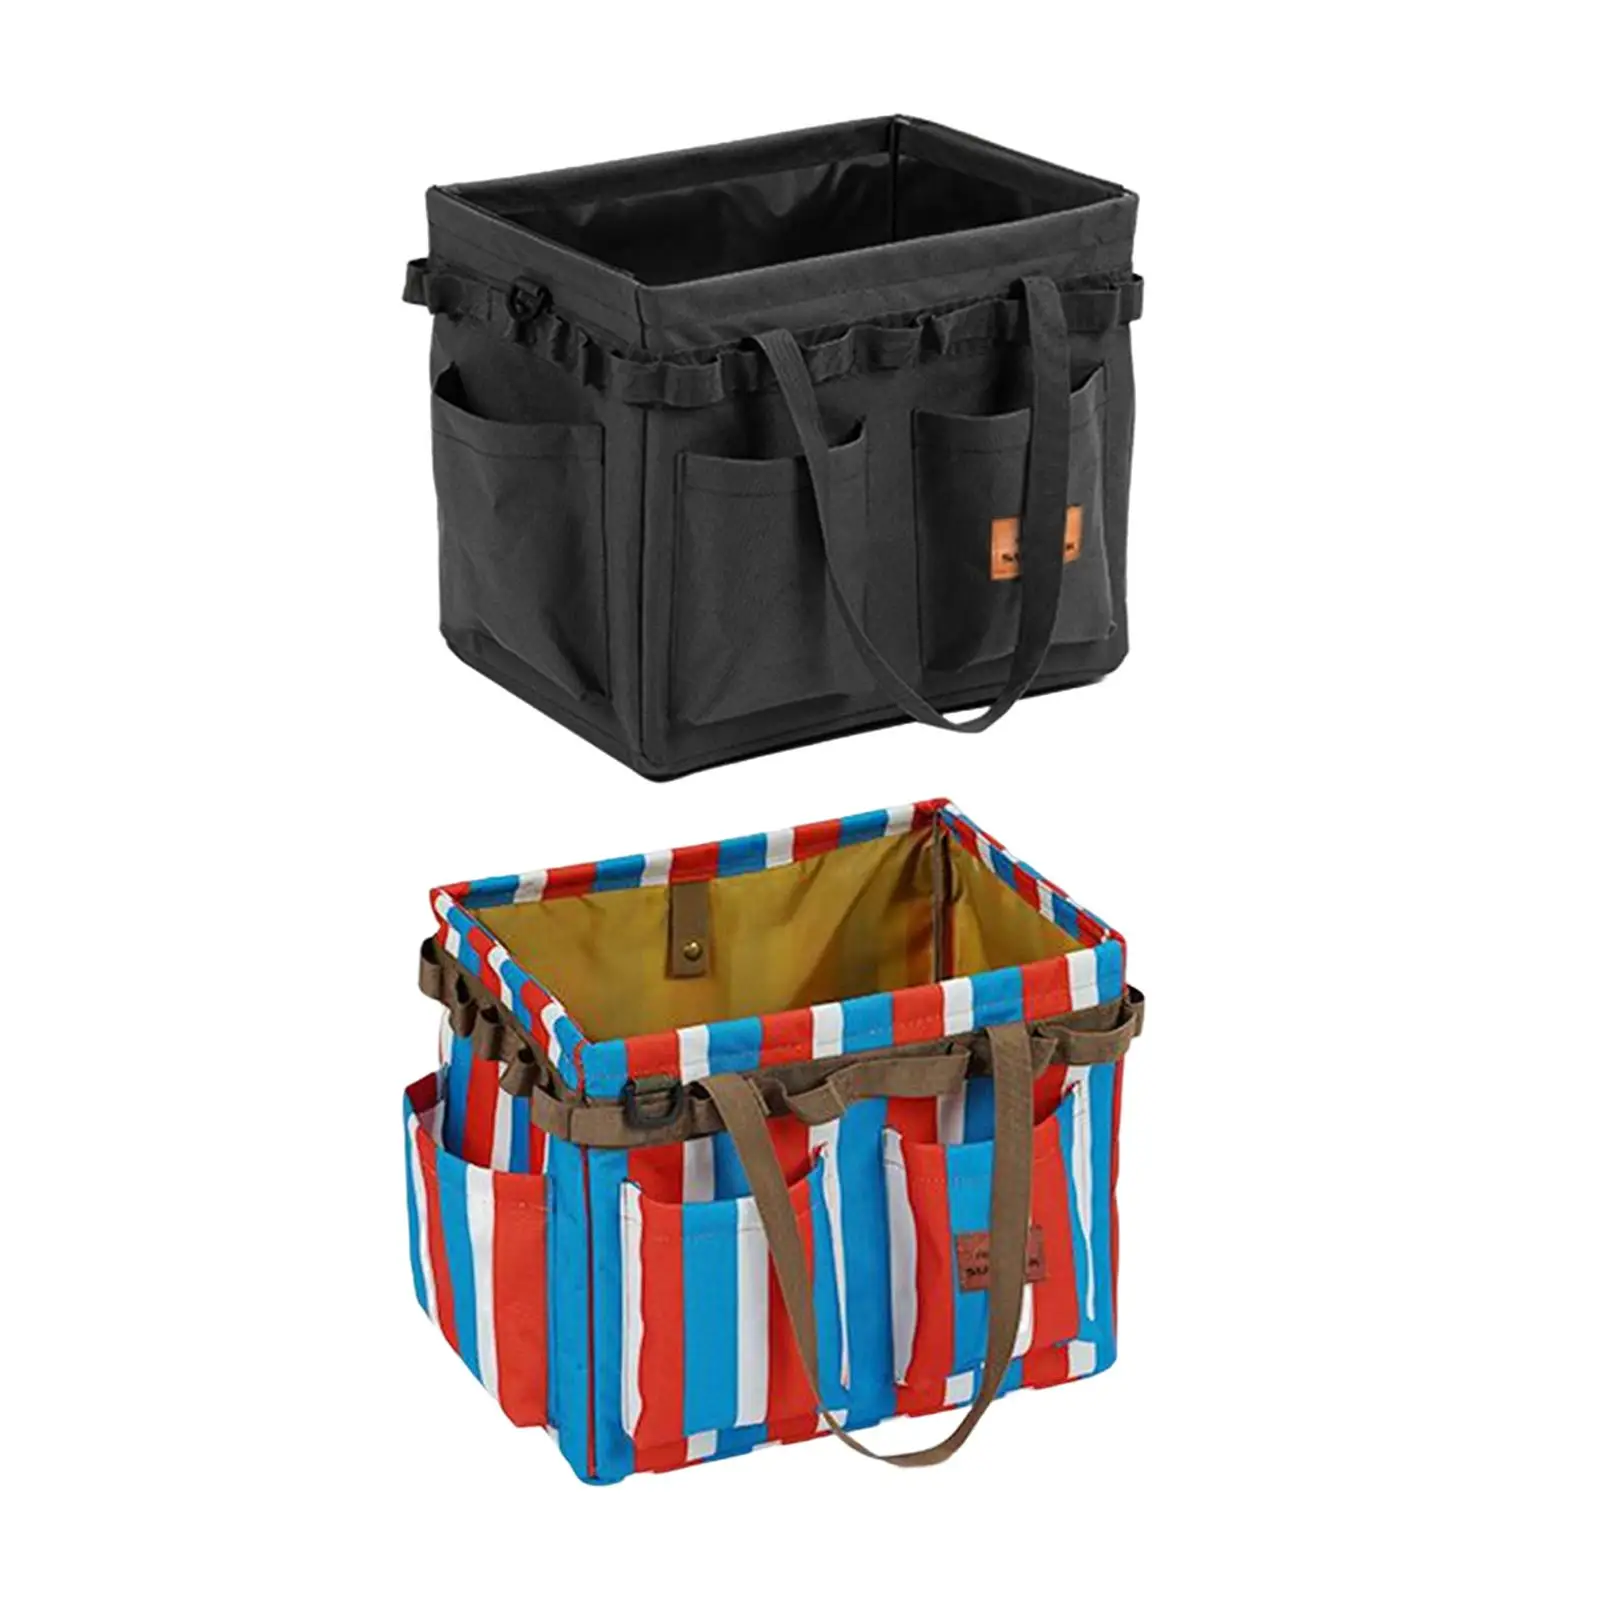 Multifunctional Utility Bag Tool Organizer Large Basket Collapsible Camping